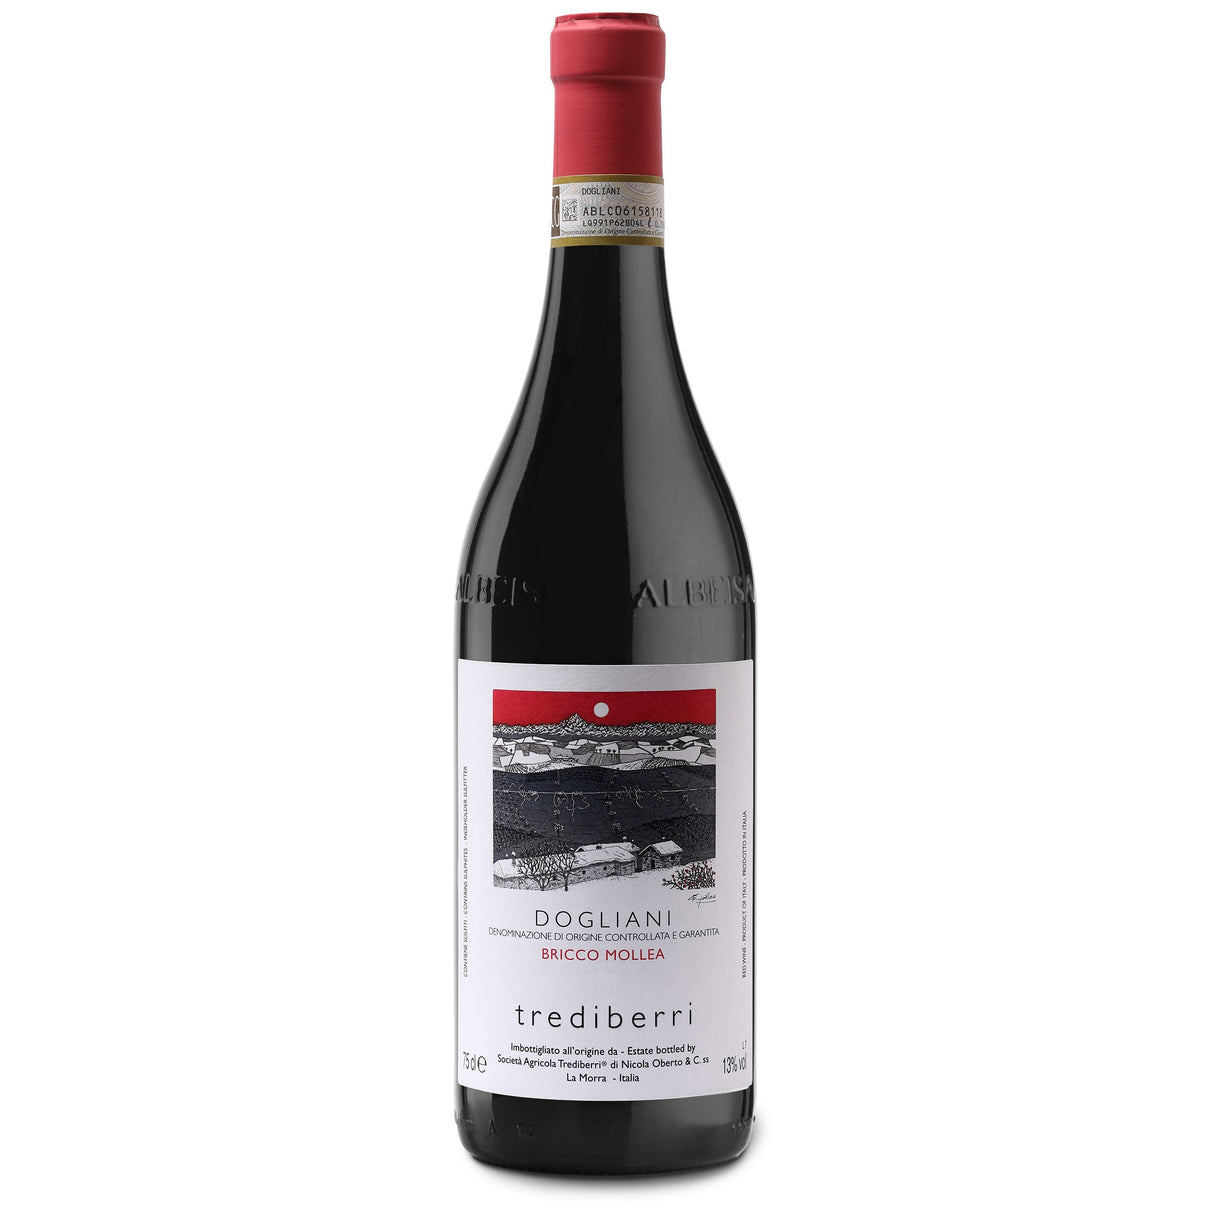 Trediberri Dogliani Bricco Mollea Dolcetto
DOCG (very limited) 2020-Red Wine-World Wine